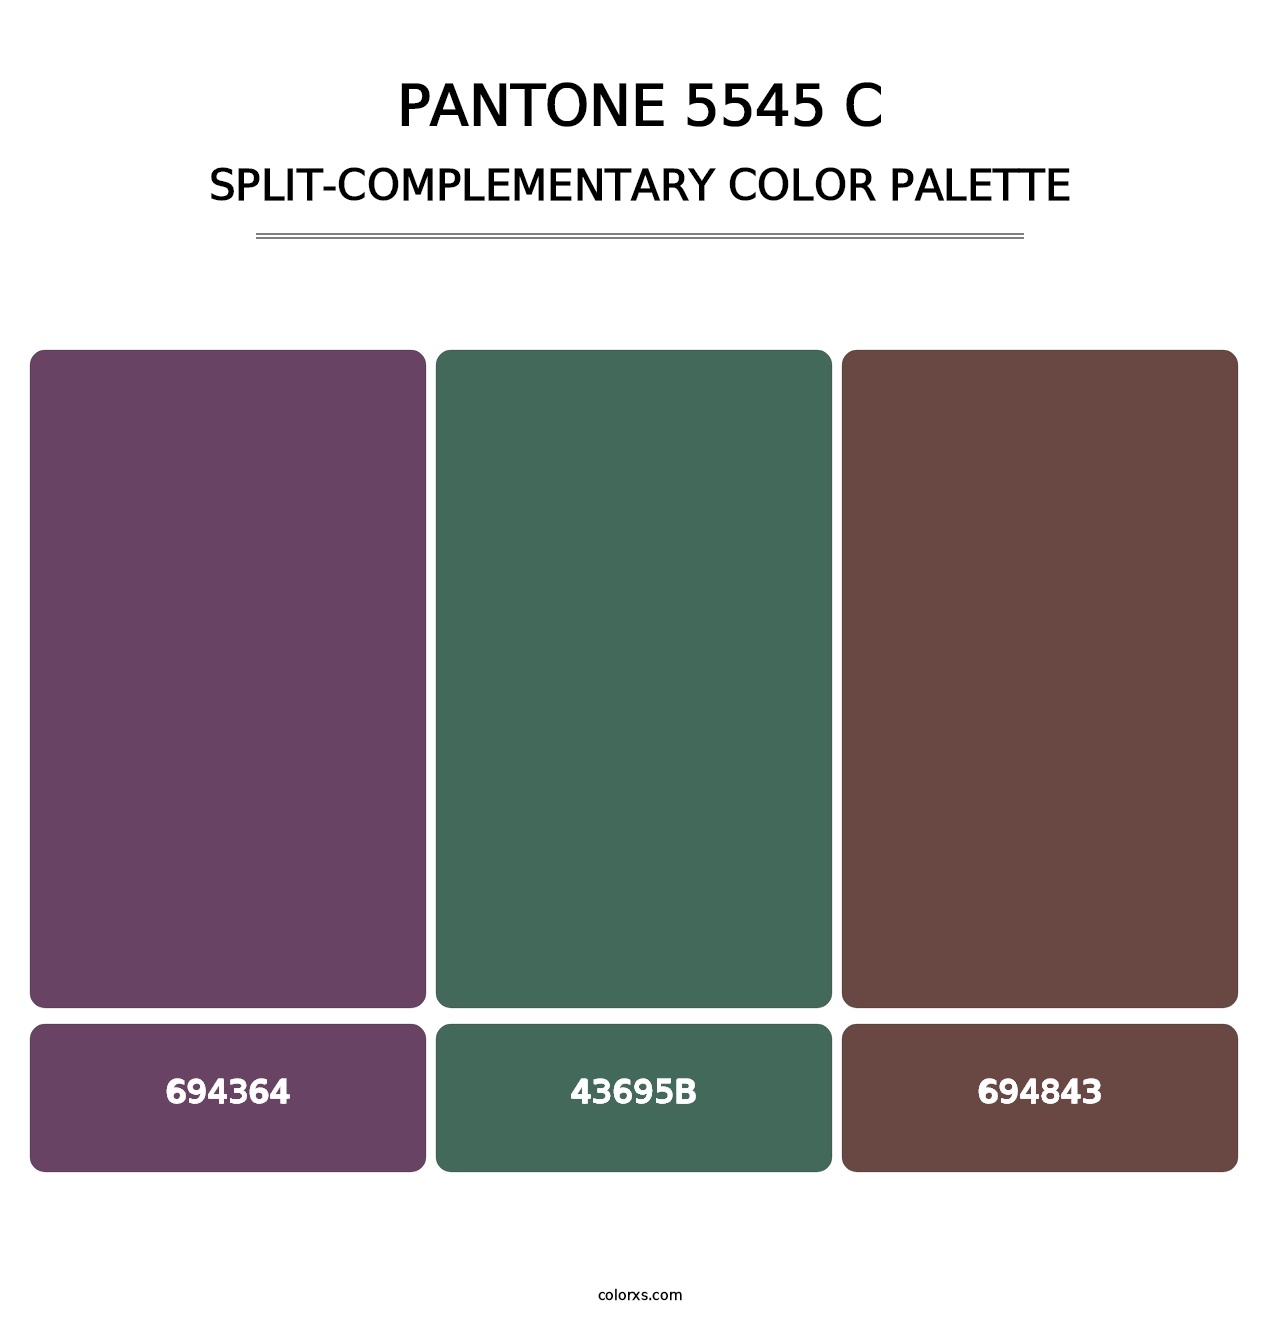 PANTONE 5545 C - Split-Complementary Color Palette